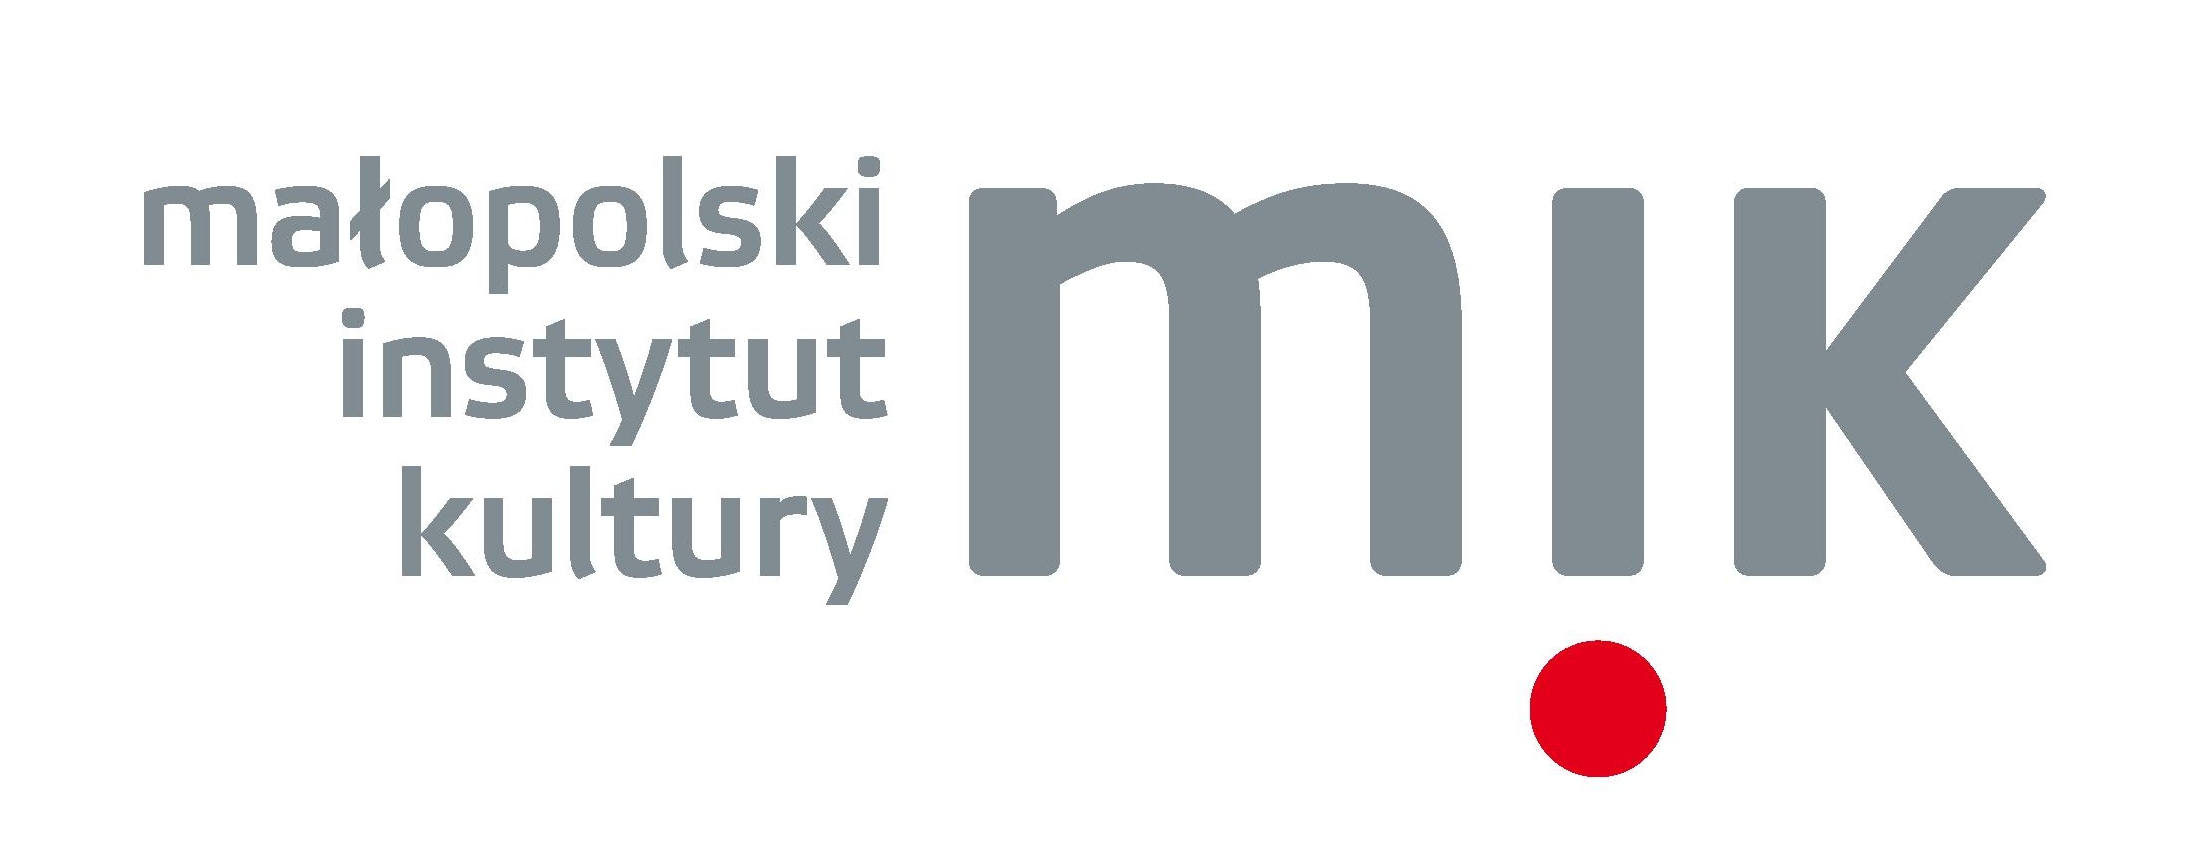 malopolski instytut kultury logo